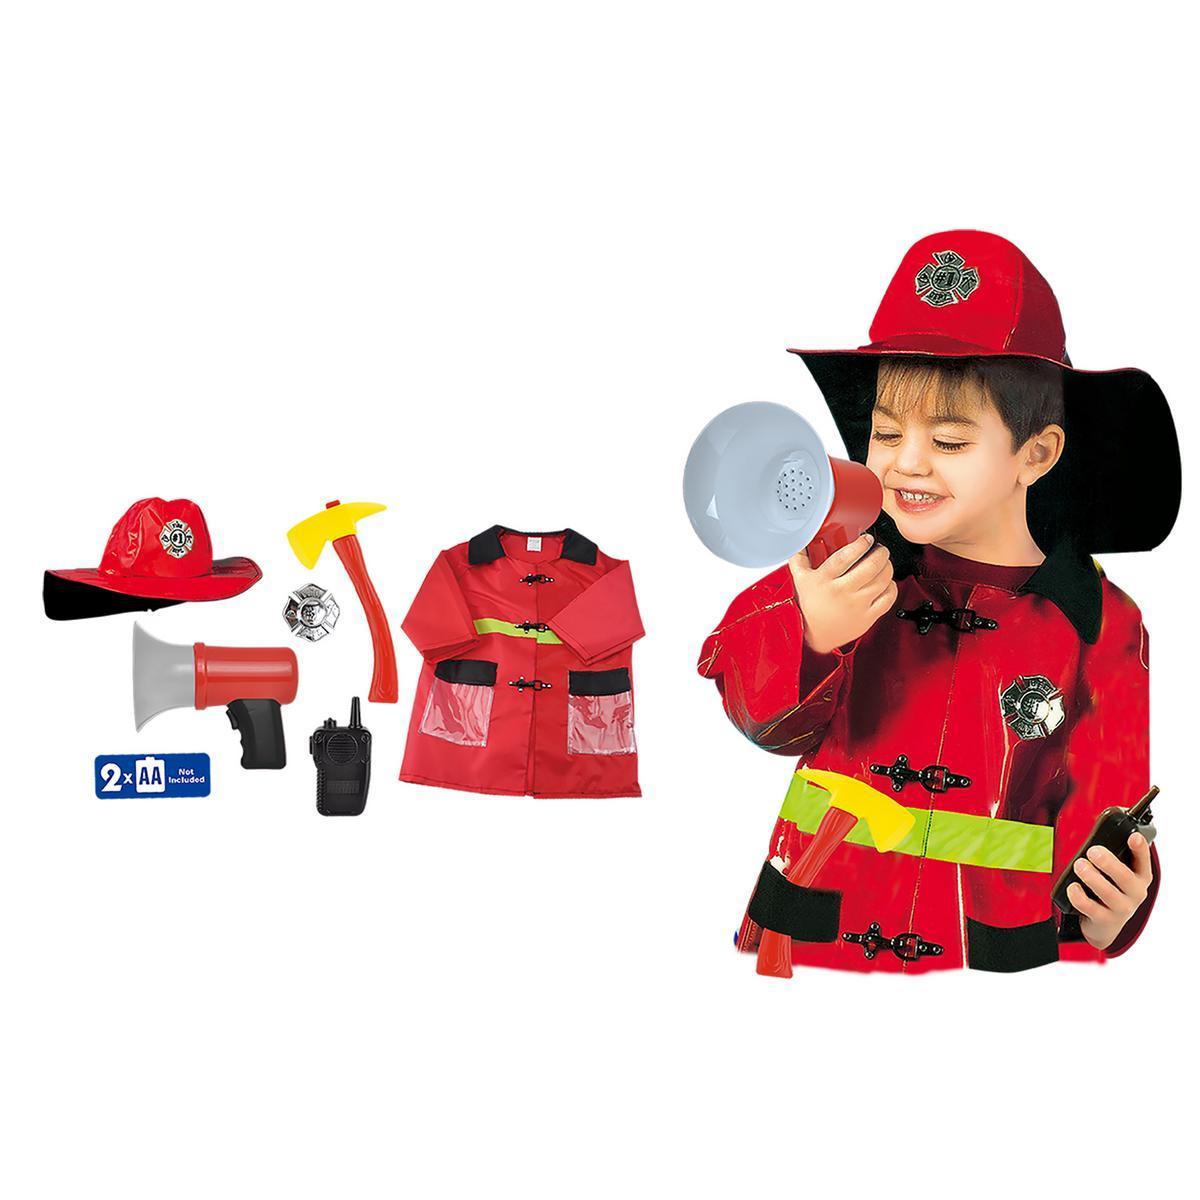 Déguisement de pompier + accessoires - Plastique et polypropylène - Taille unique - Jaune et rouge